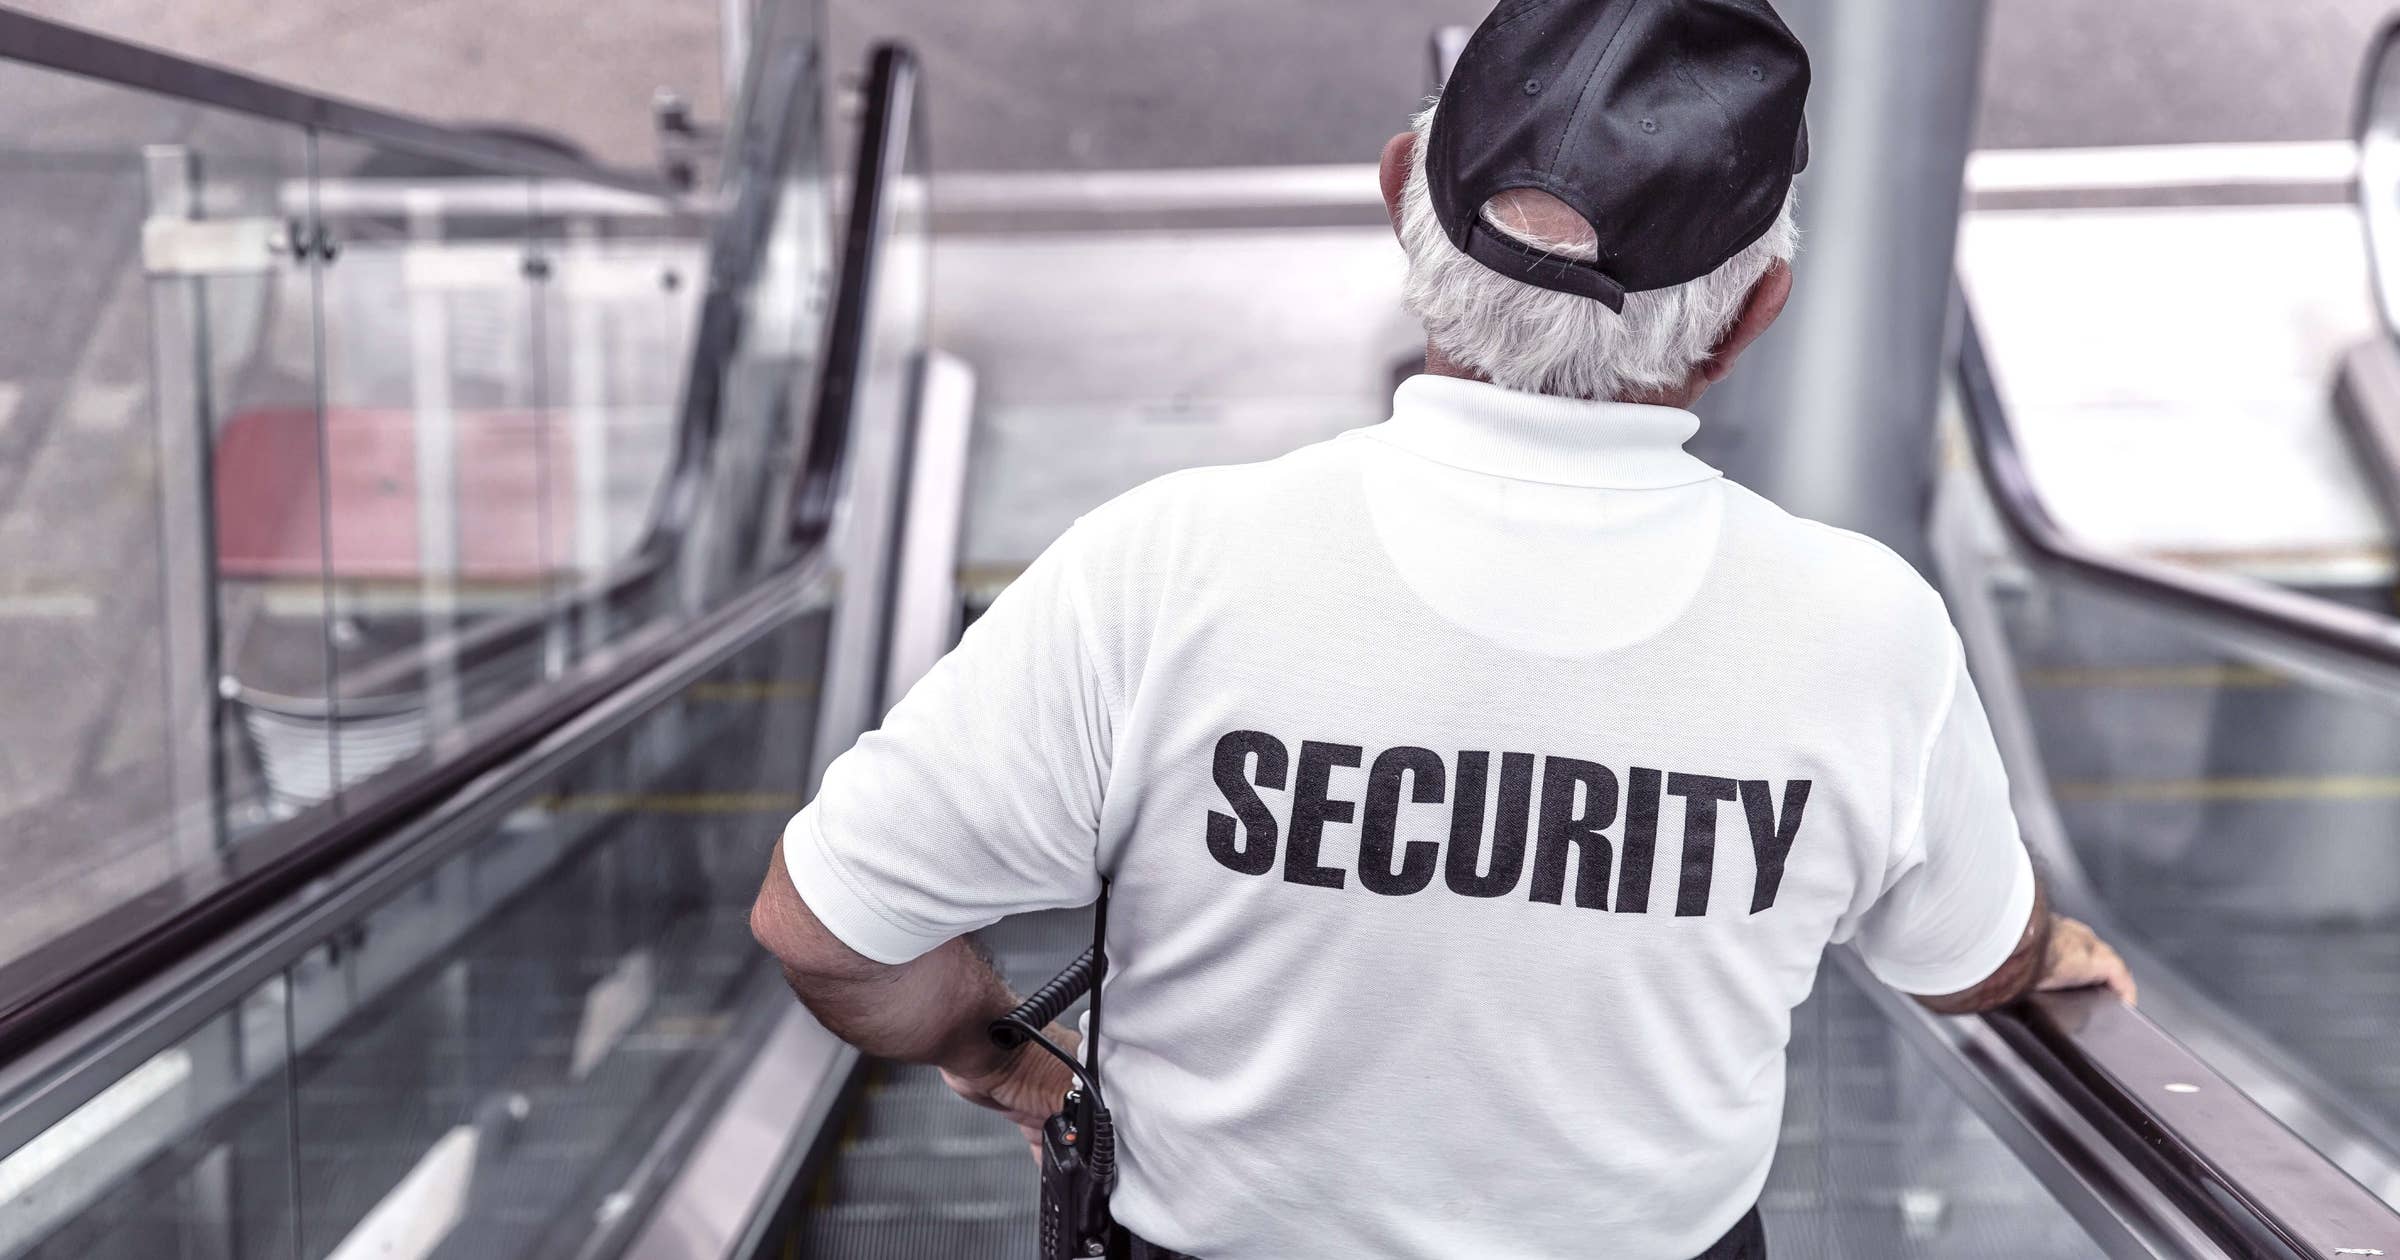 Unarmed security jobs in murfreesboro tn